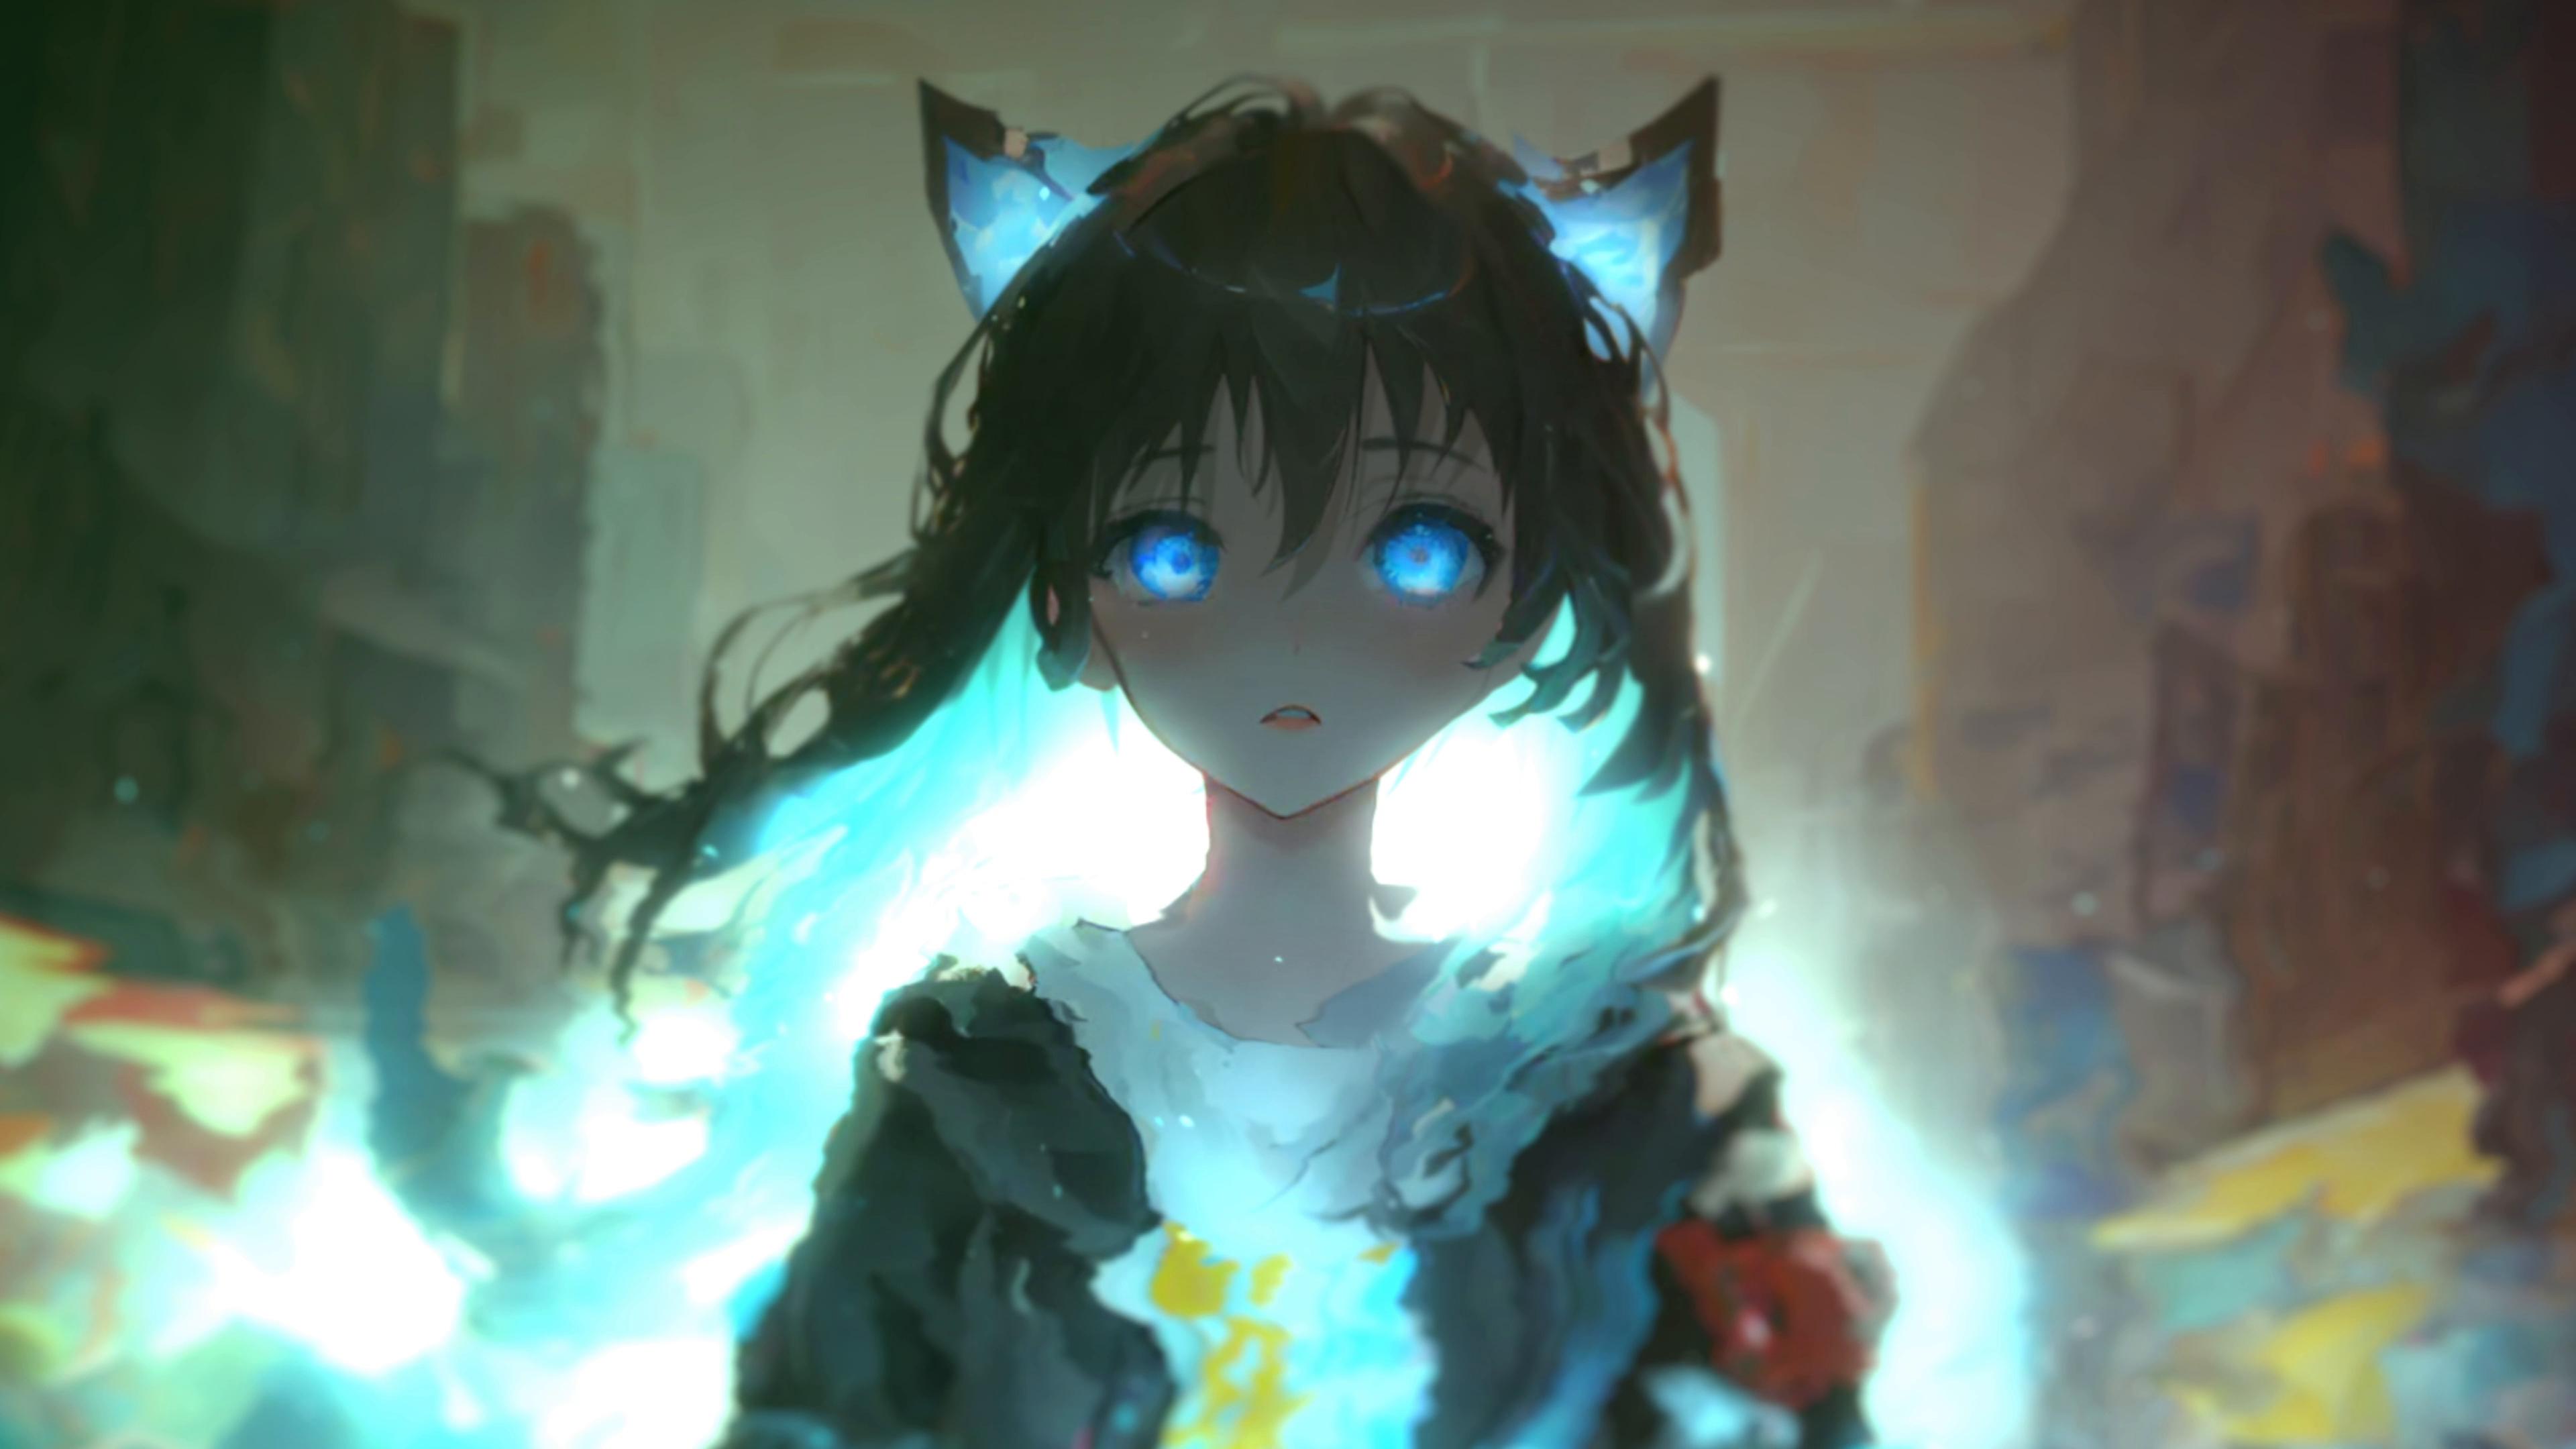 https://motionbgs.com/media/1004/anime-cat-girl-with-blue-eyes.jpg